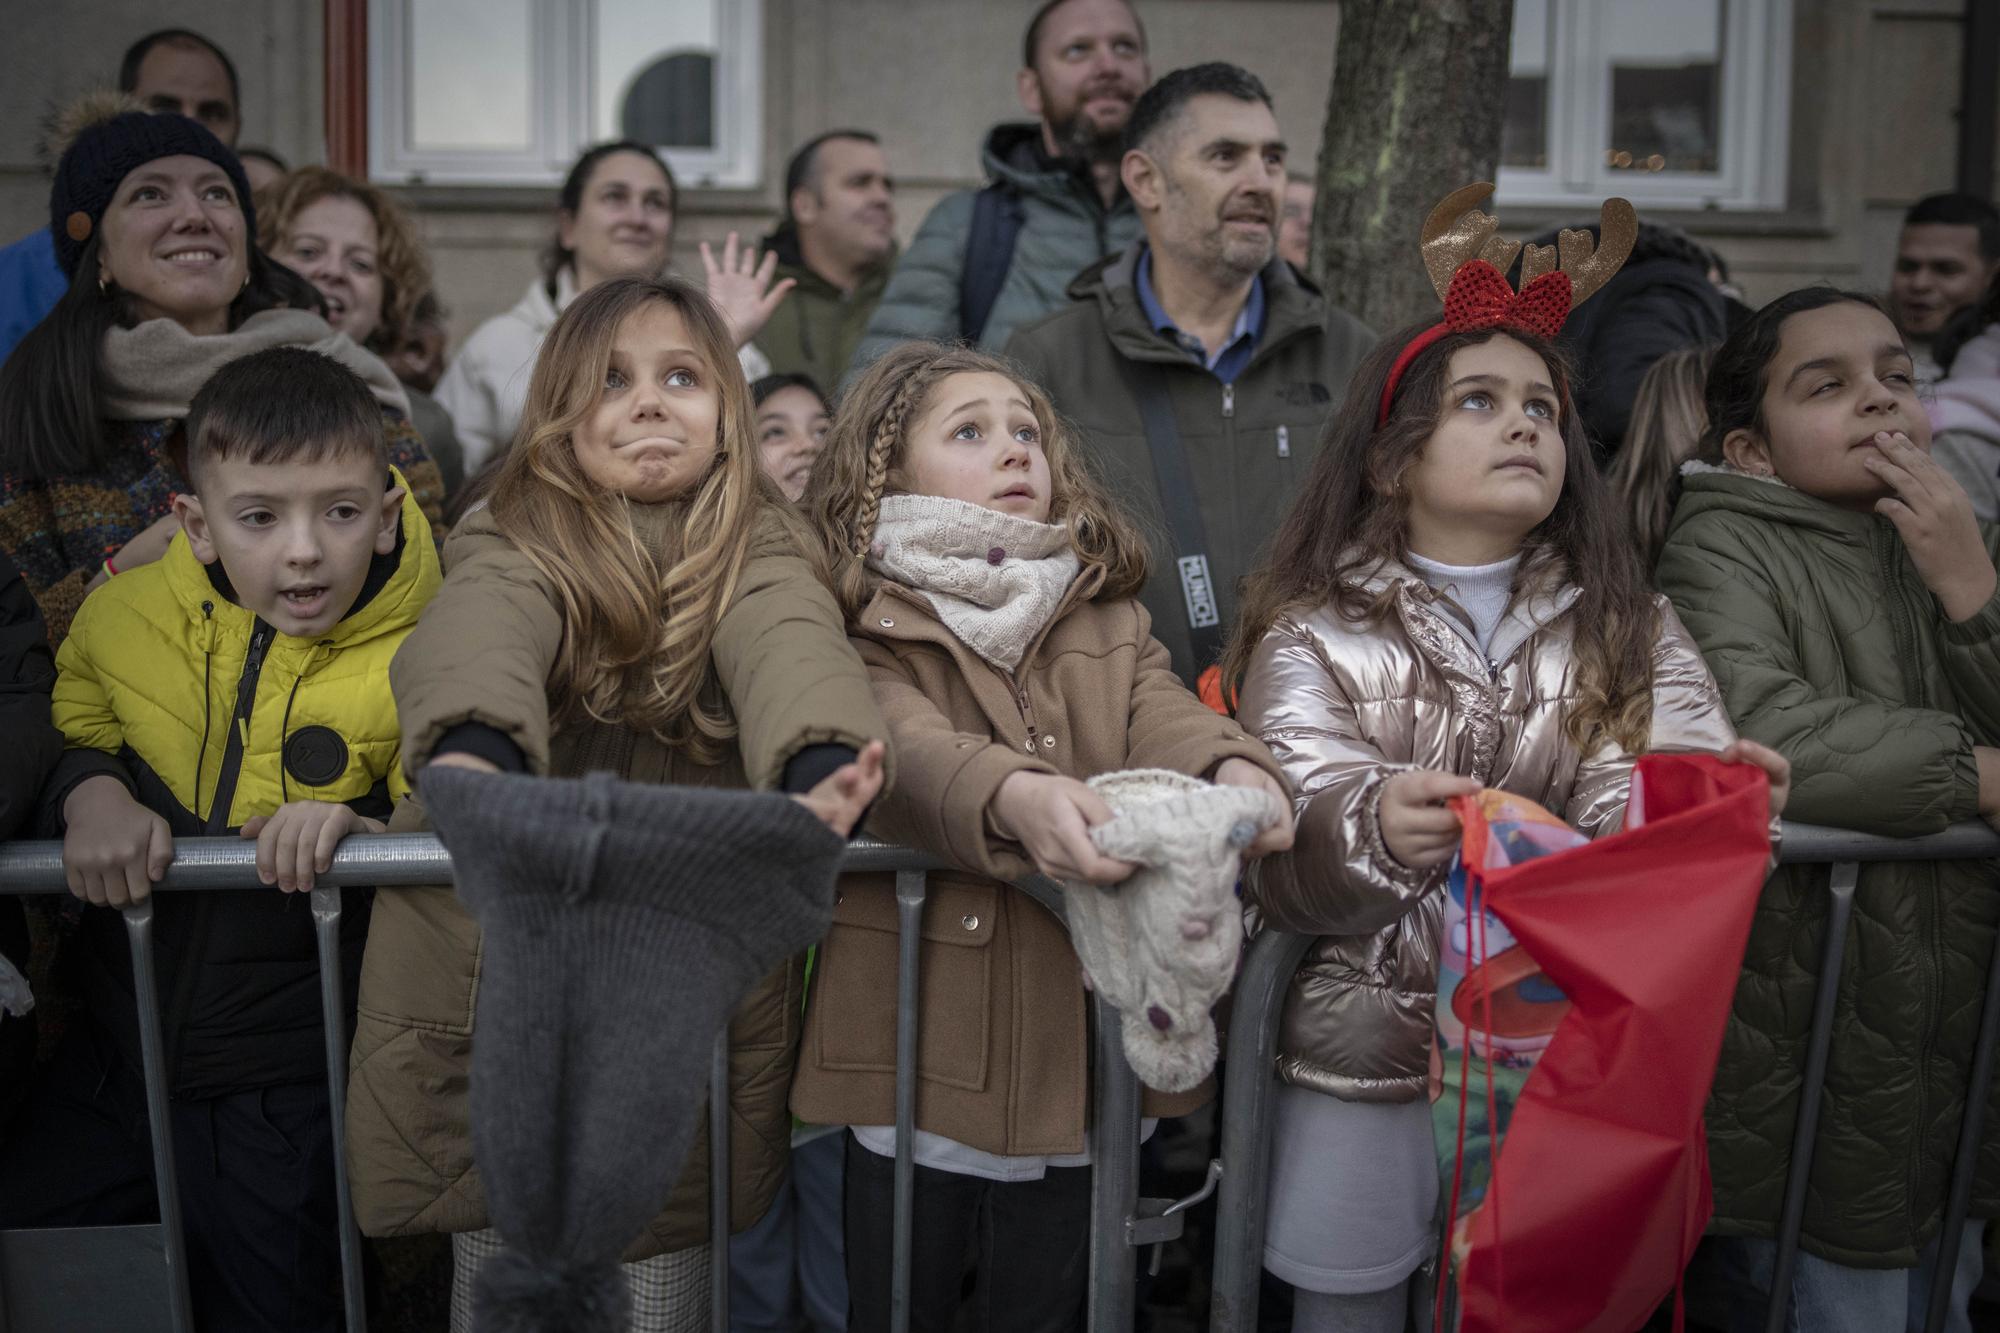 Los Reyes Magos desatan la ilusión en Ourense